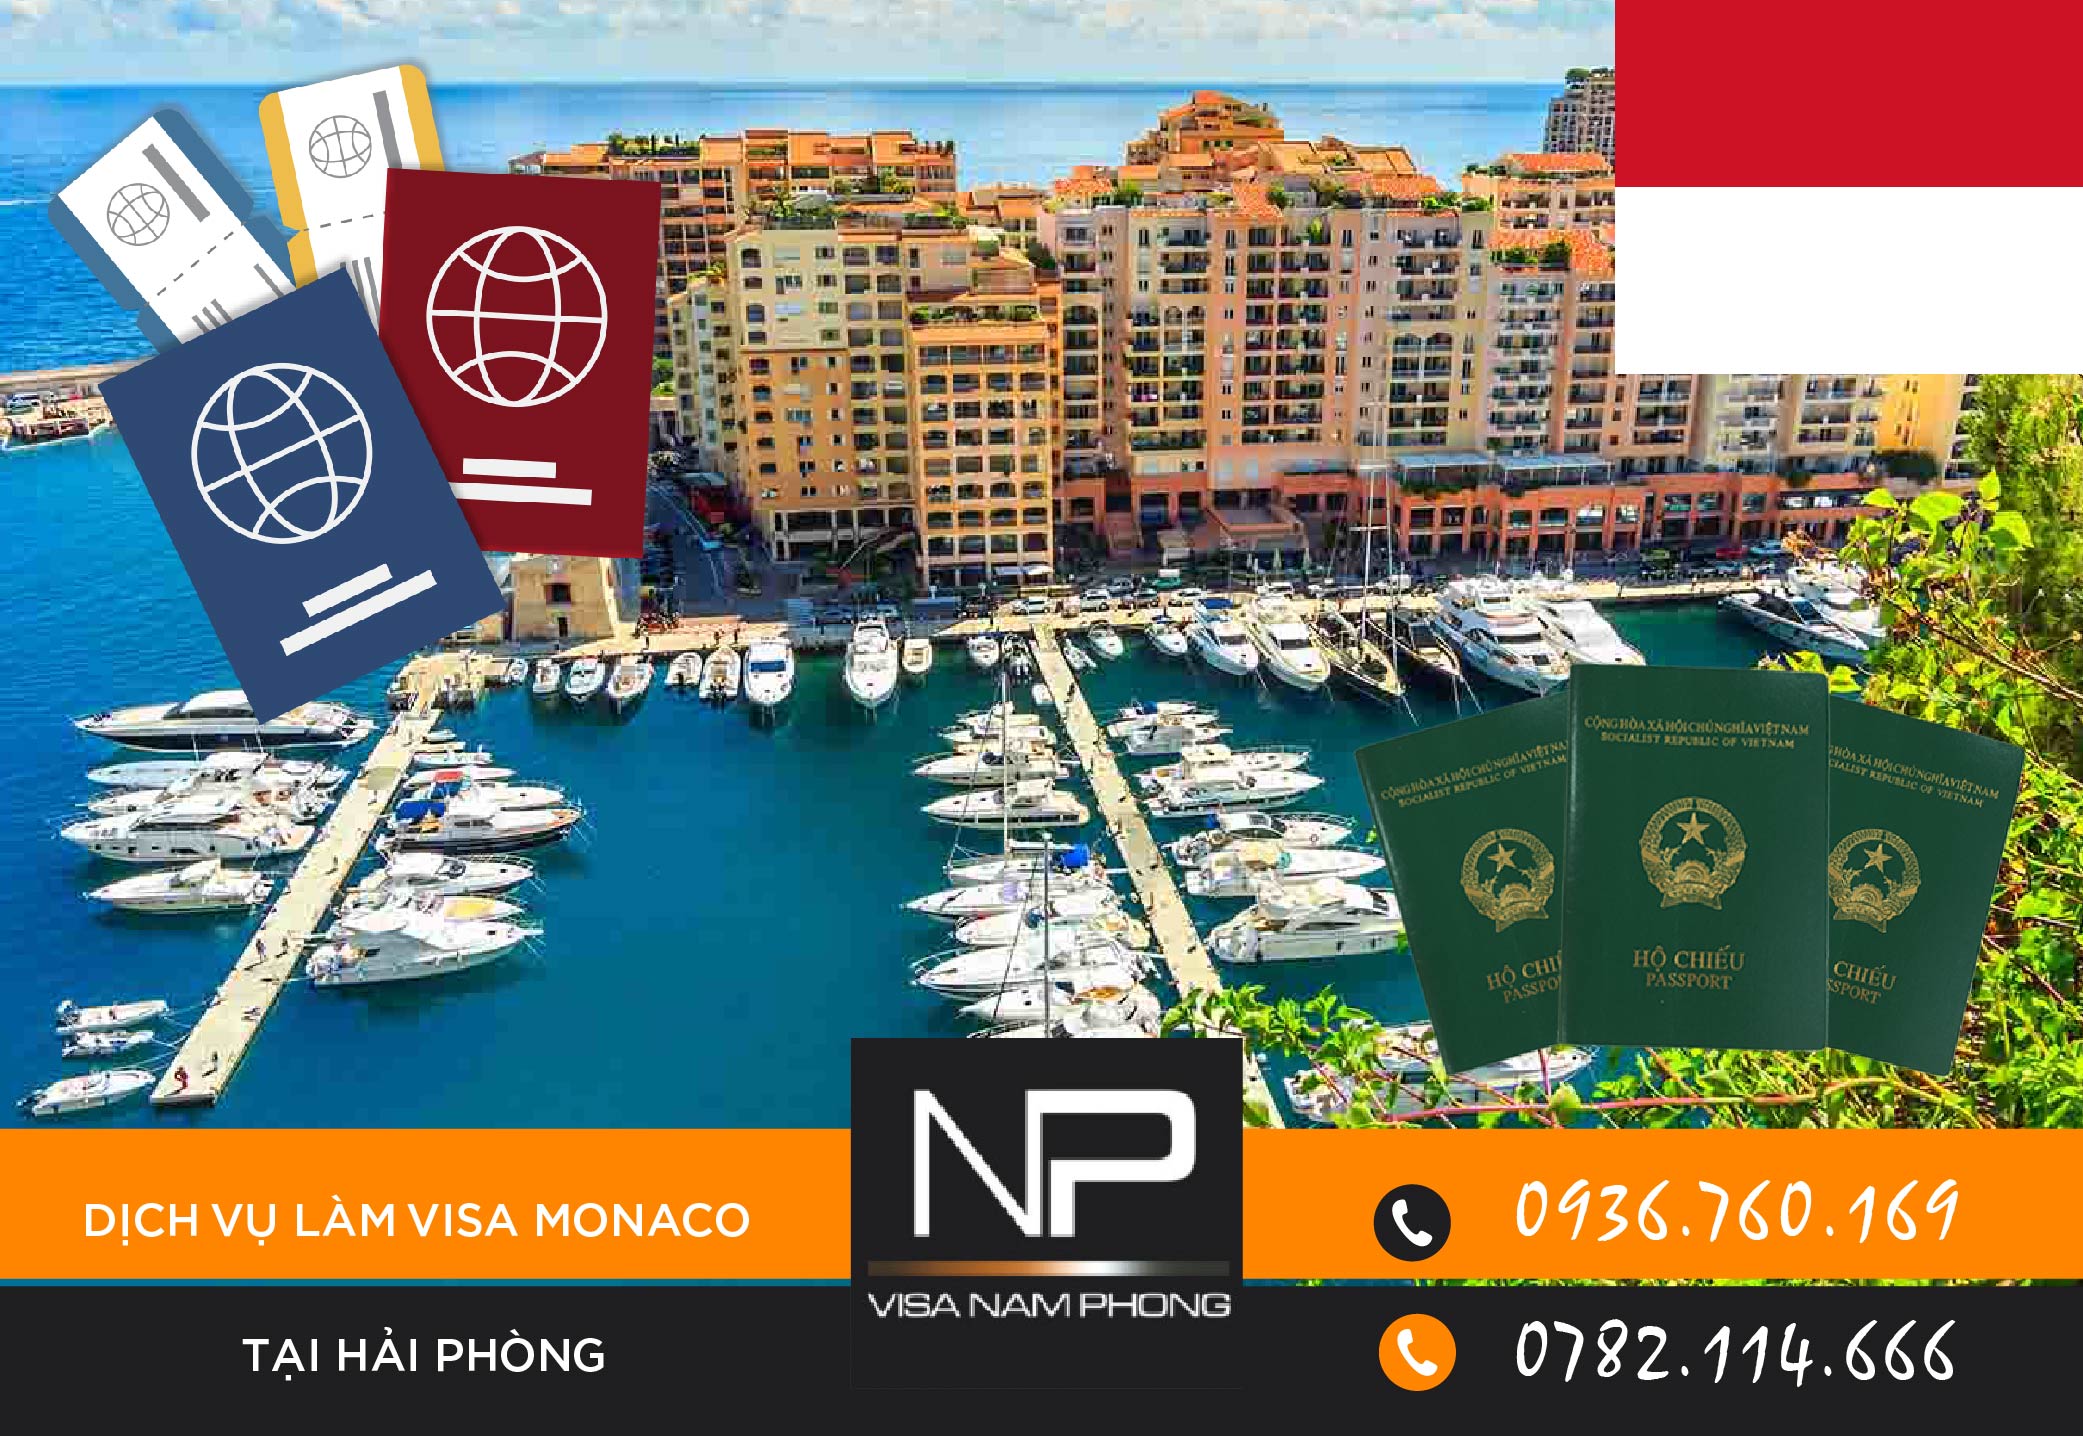 Dịch vụ làm visa Monaco tại Hải Phòng